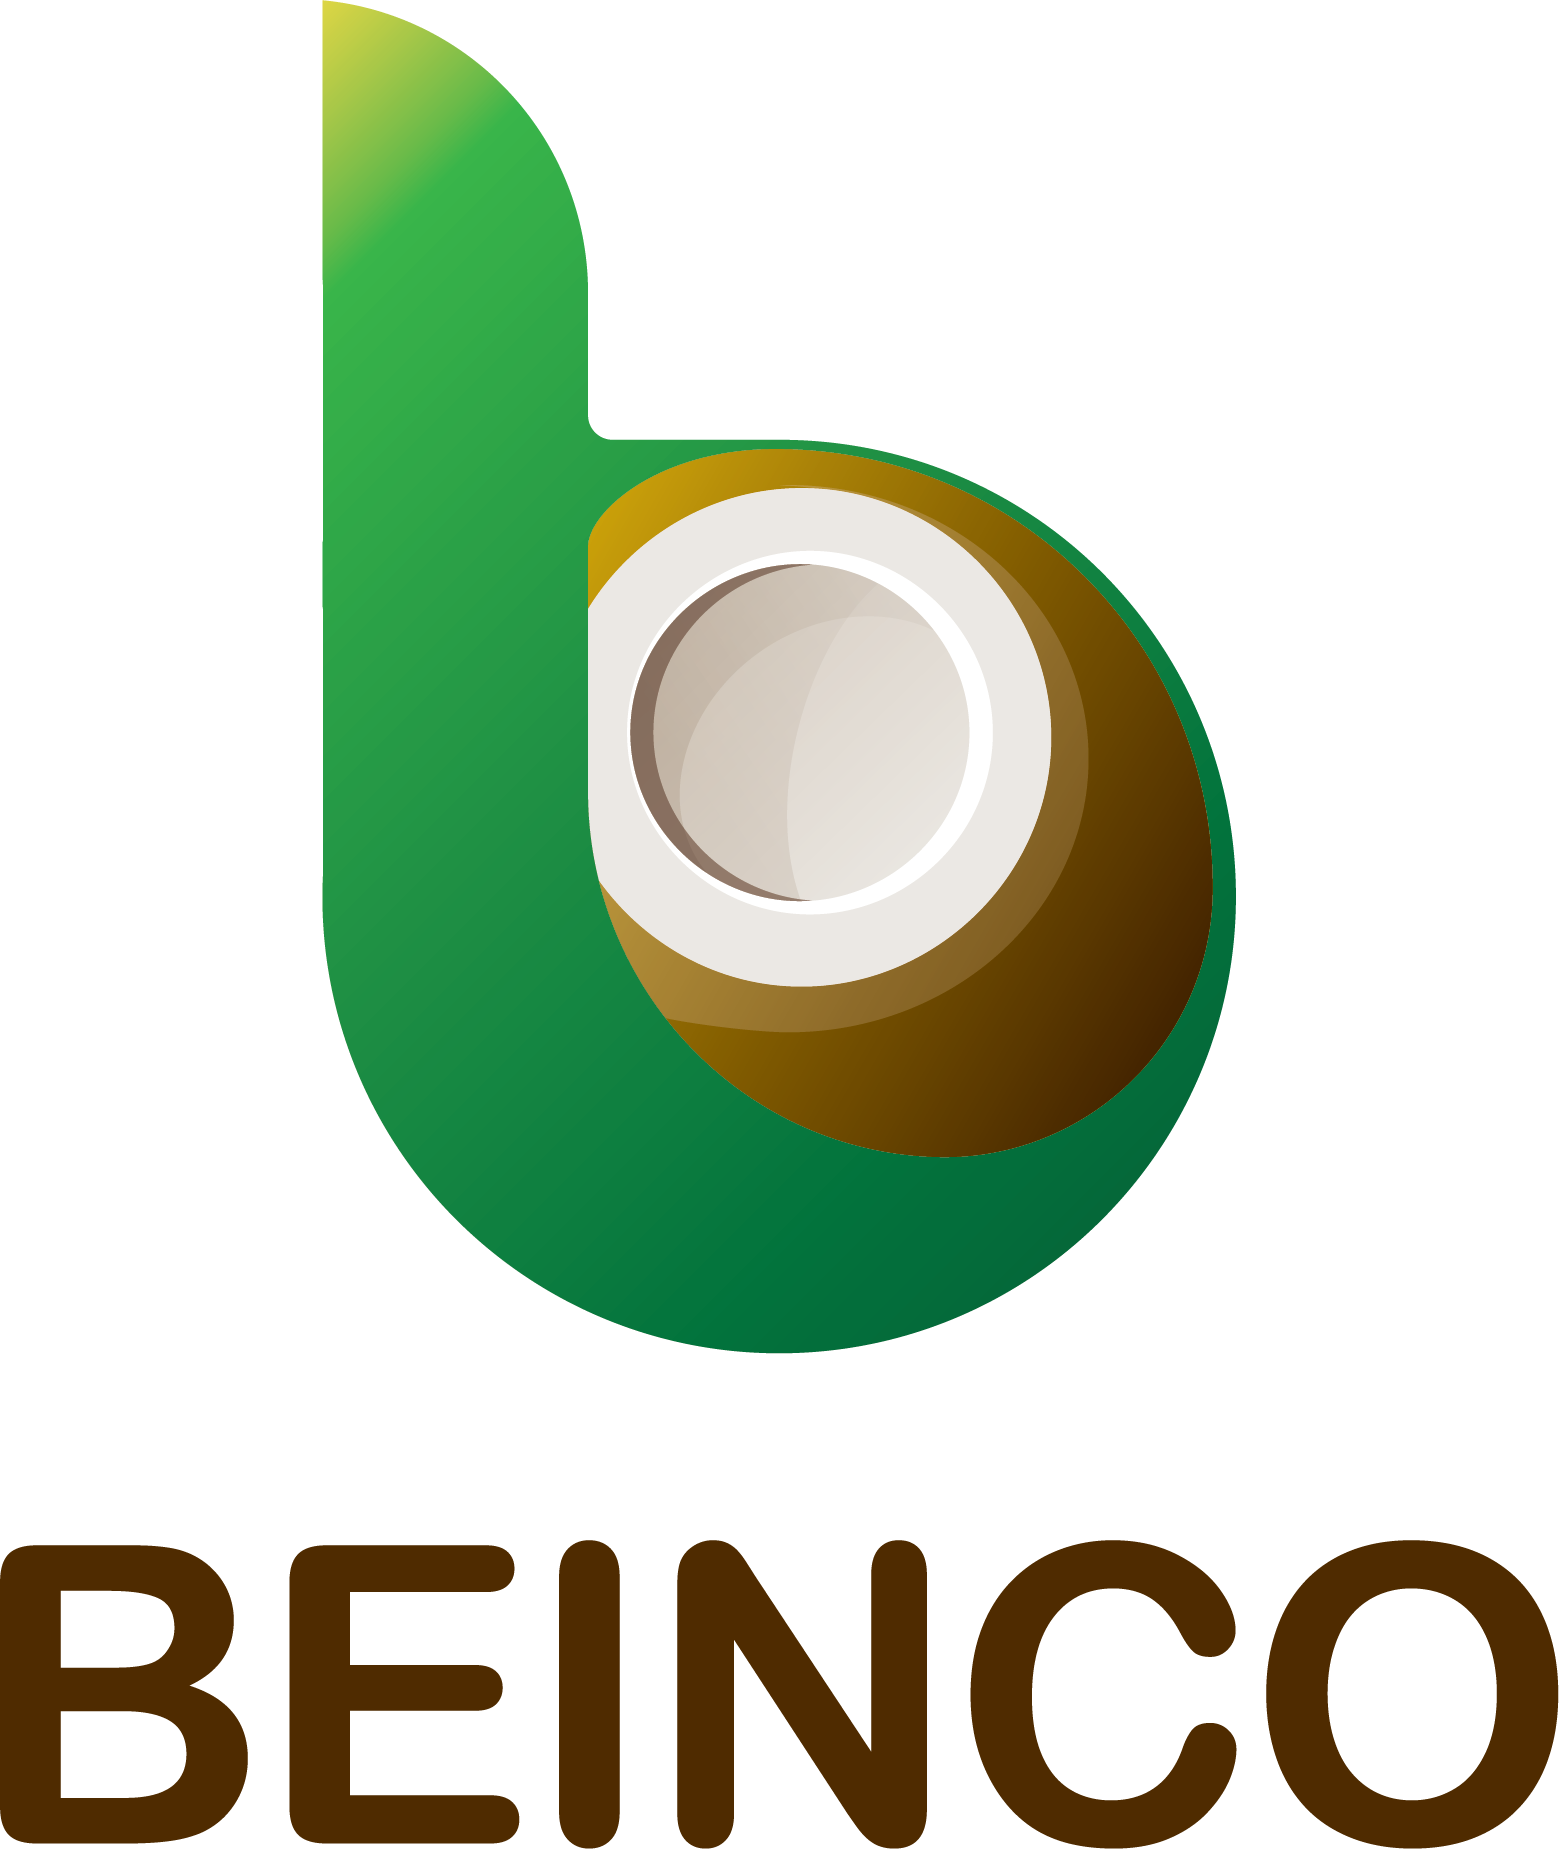 Benico